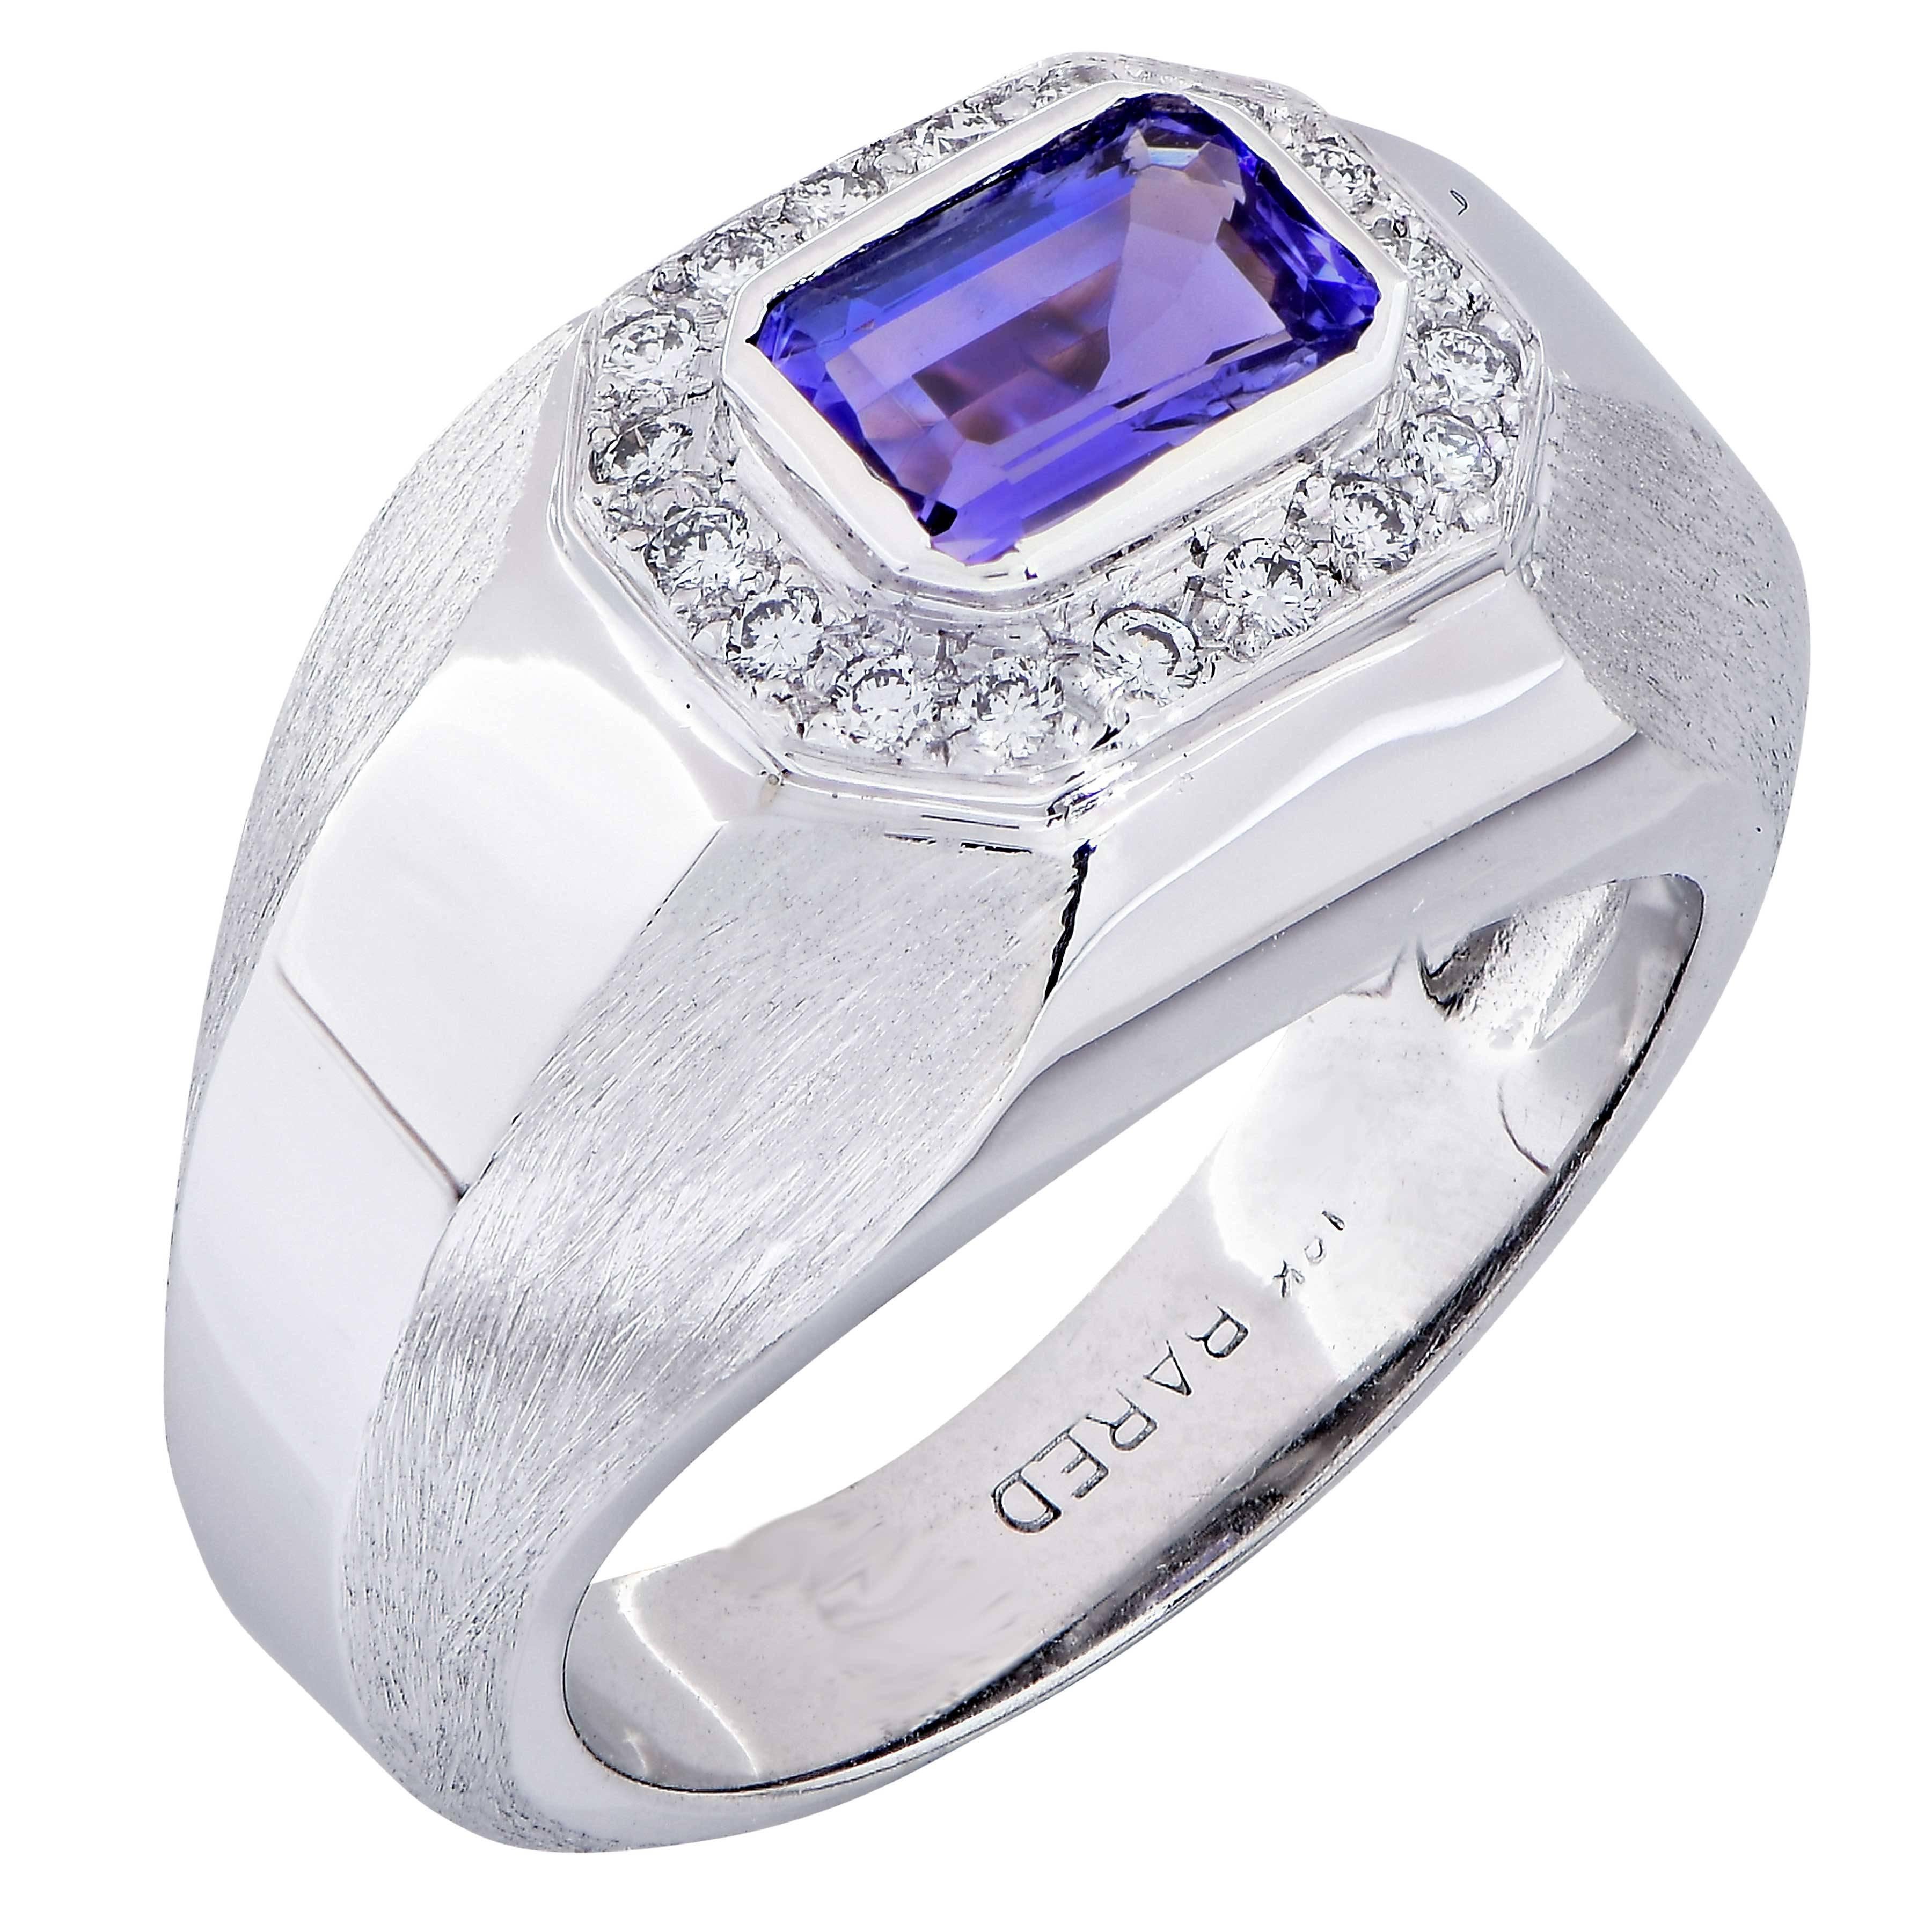 1.15 Carat Tanzanite and Diamond 18 Karat White Gold Ring For Sale at ...